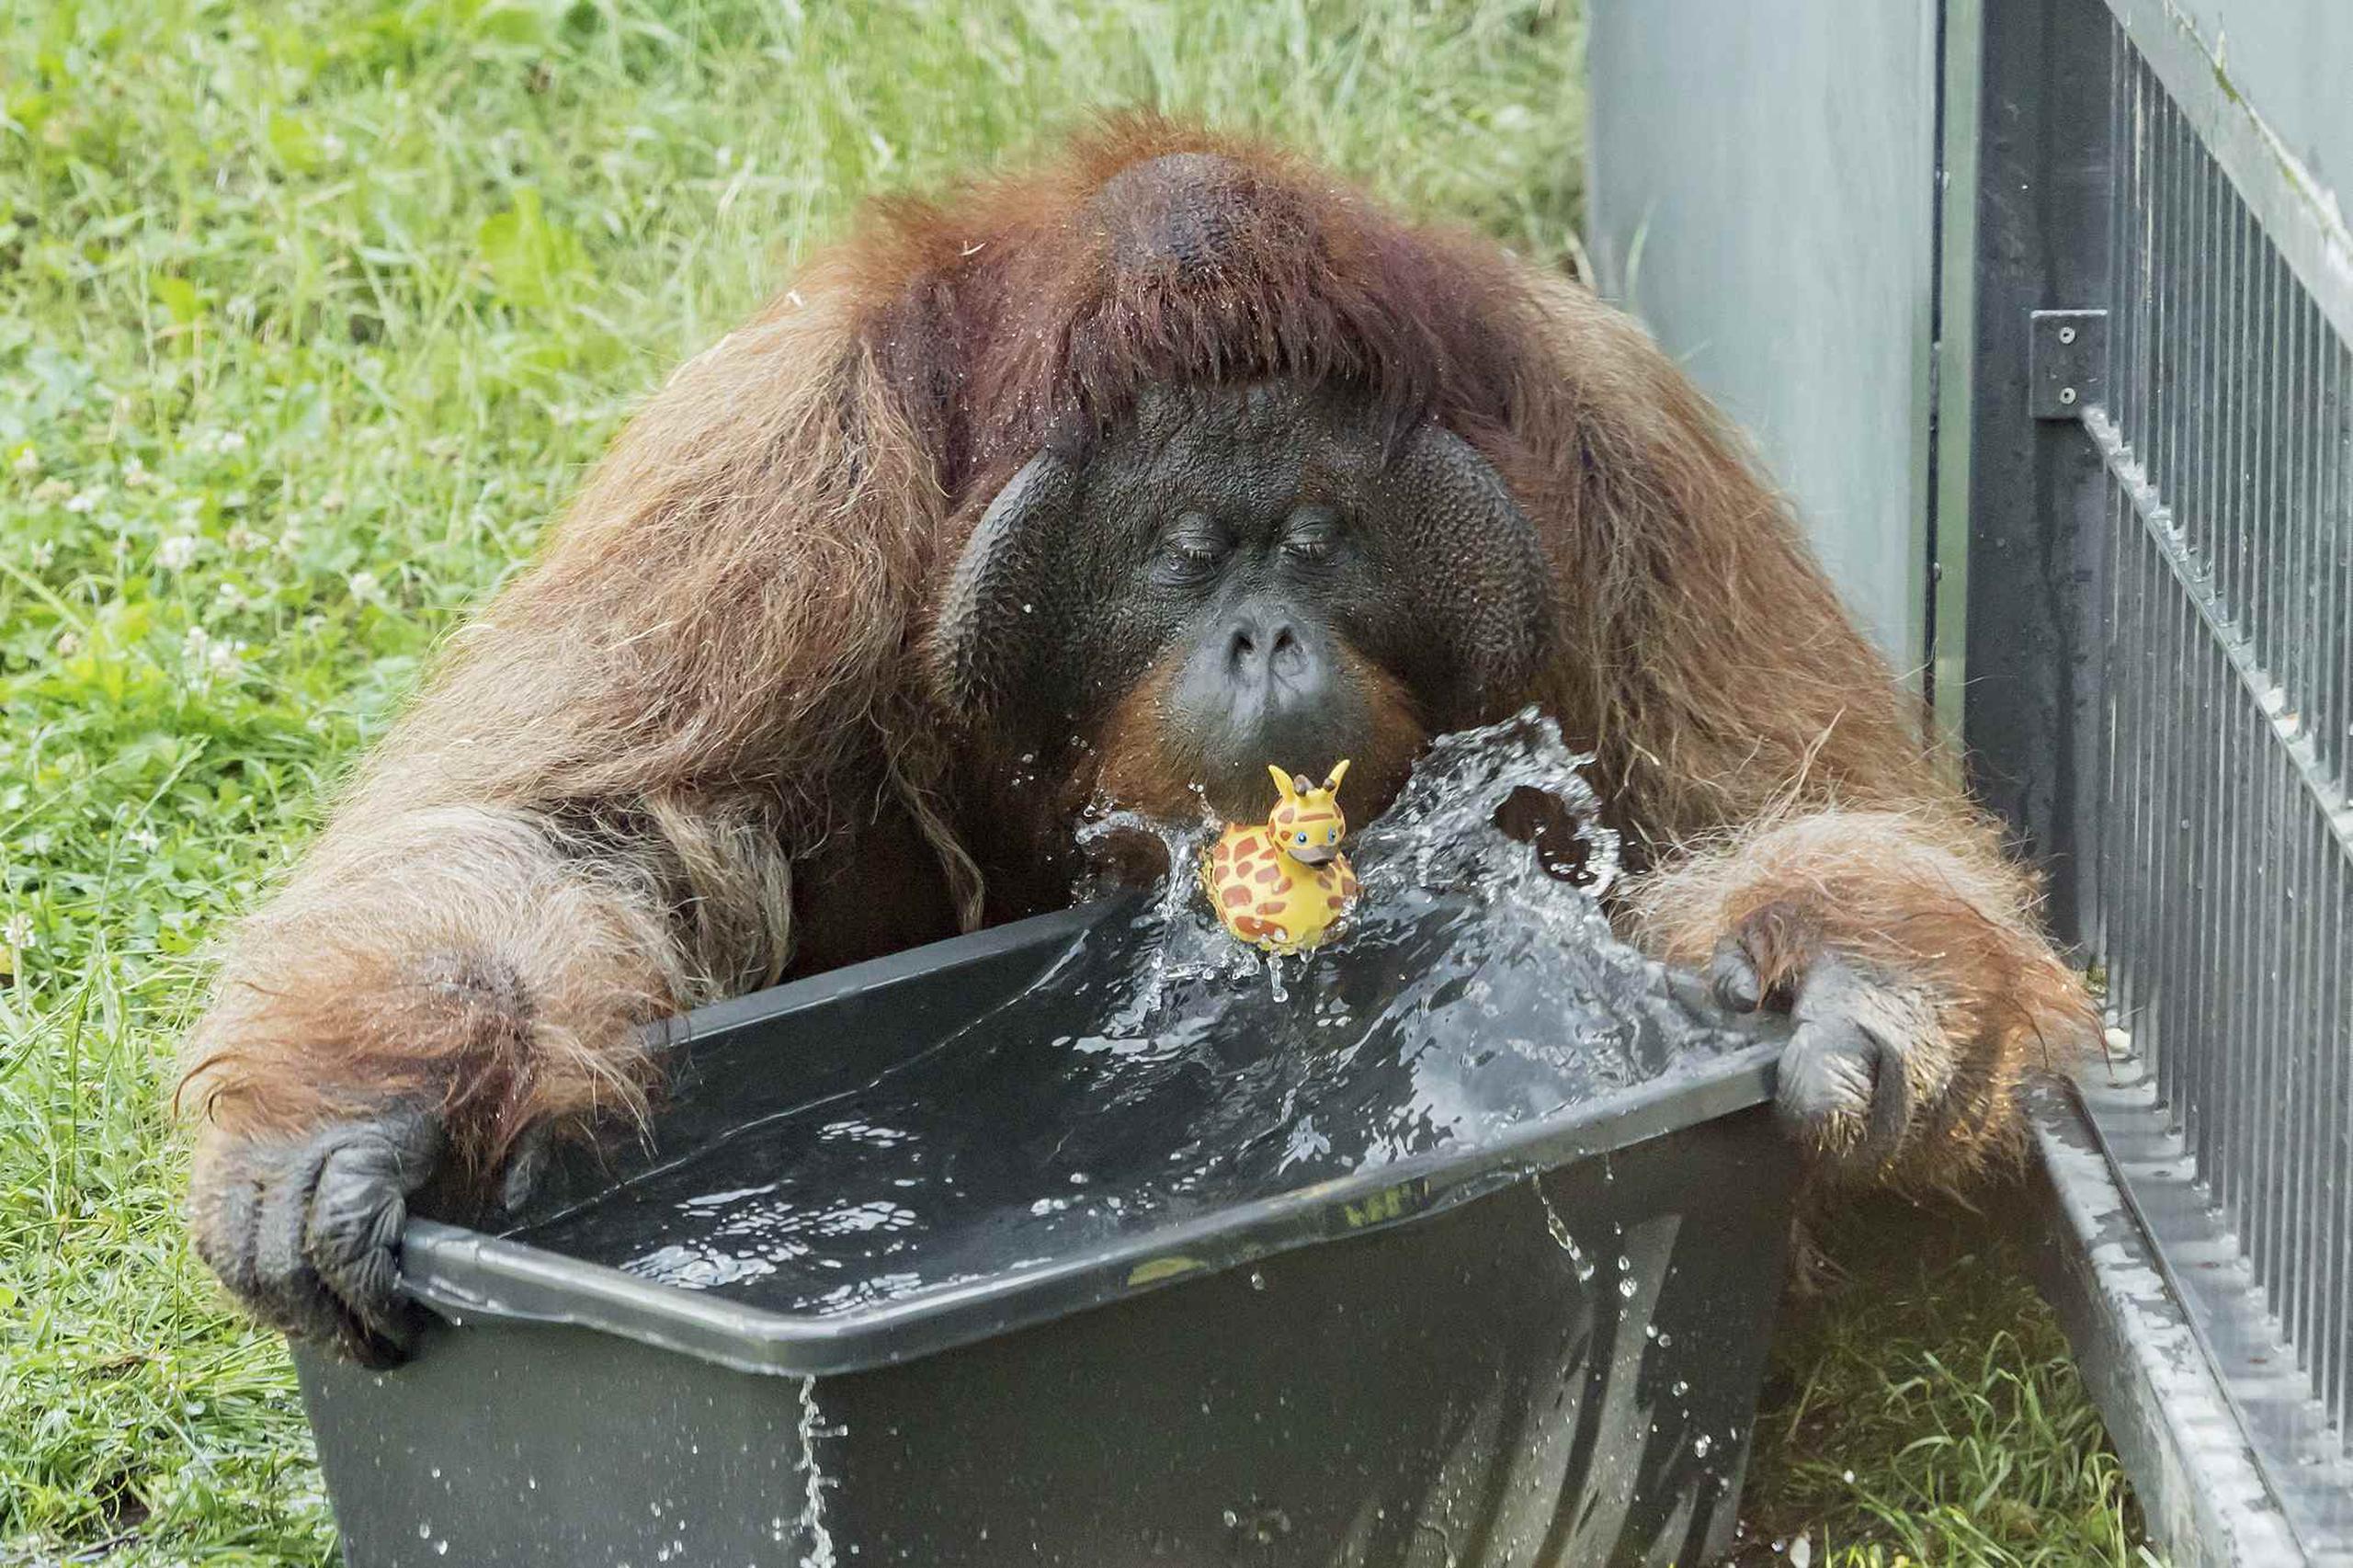 Fotografía publicada por el zoológico de Schoenbrunn, en Viena, de un orangután jugando con agua. (Daniel Zupanc / Zoológico de Viena vía AP)